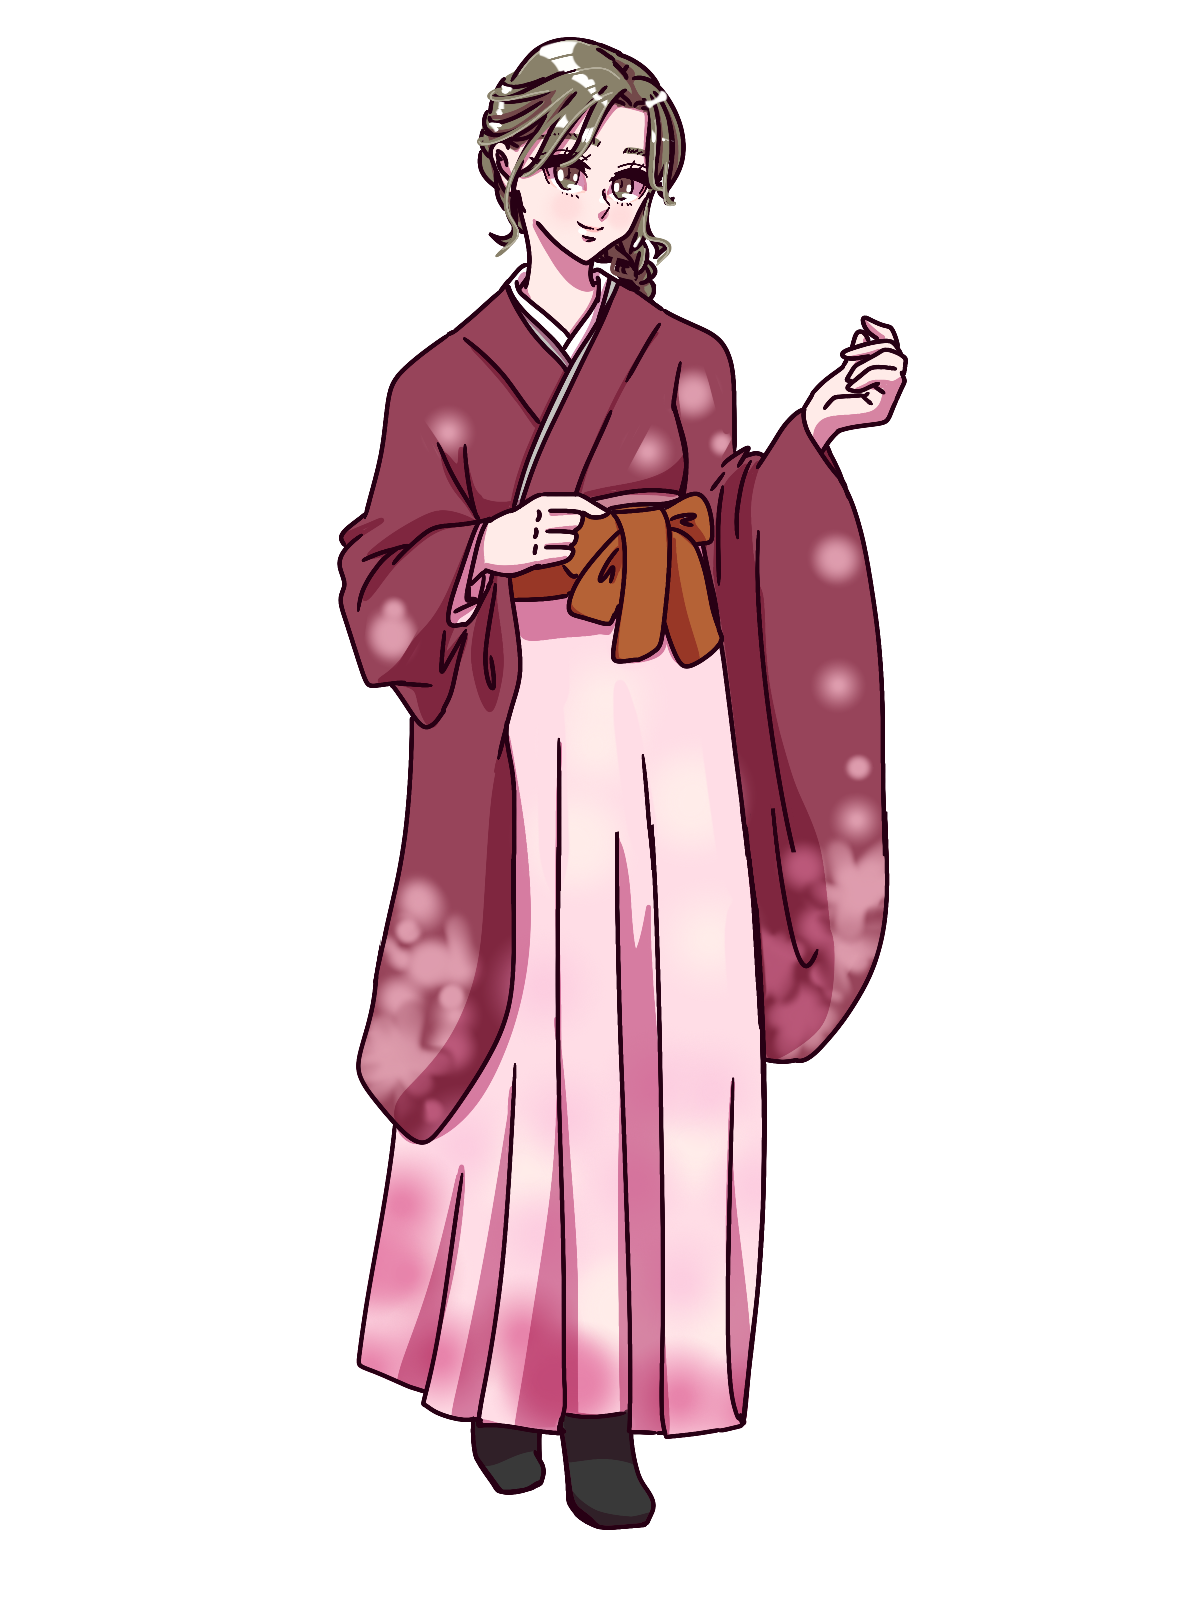 袴を着た女性のイラスト